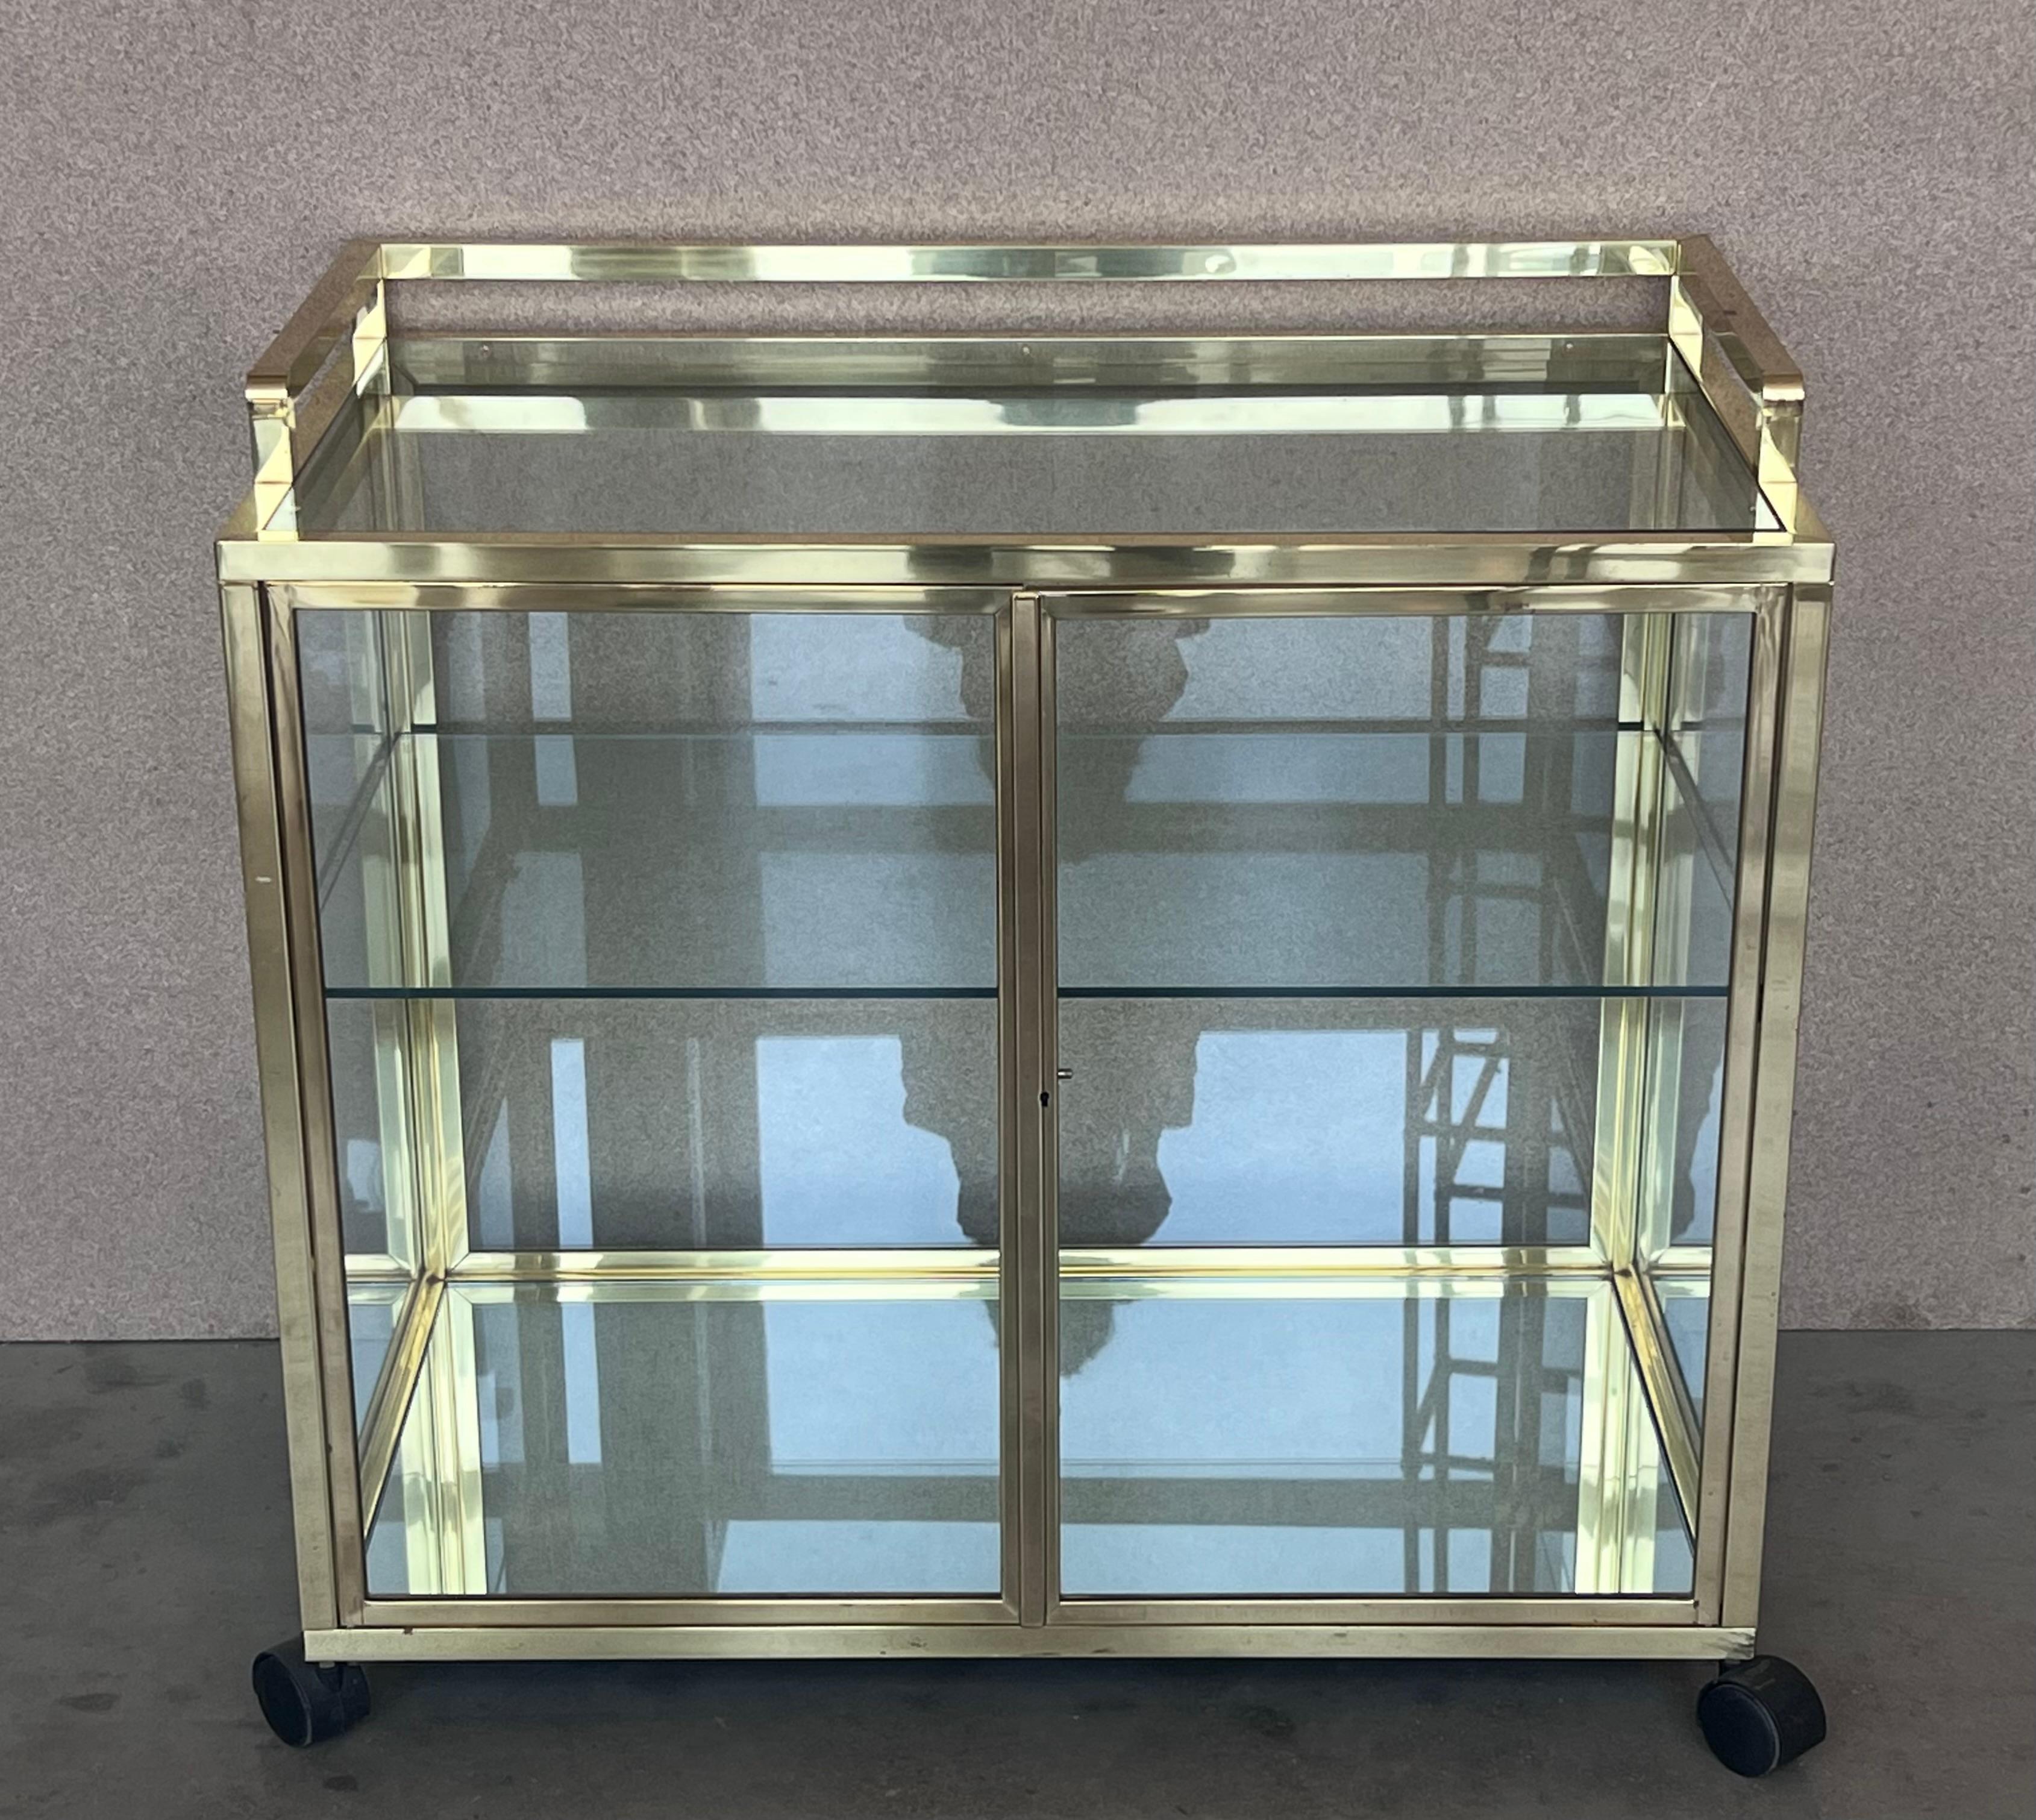 20th Century Art Deco Brass and Glass Vitrine Cabinet Bar Cart in style Treitel Gratz